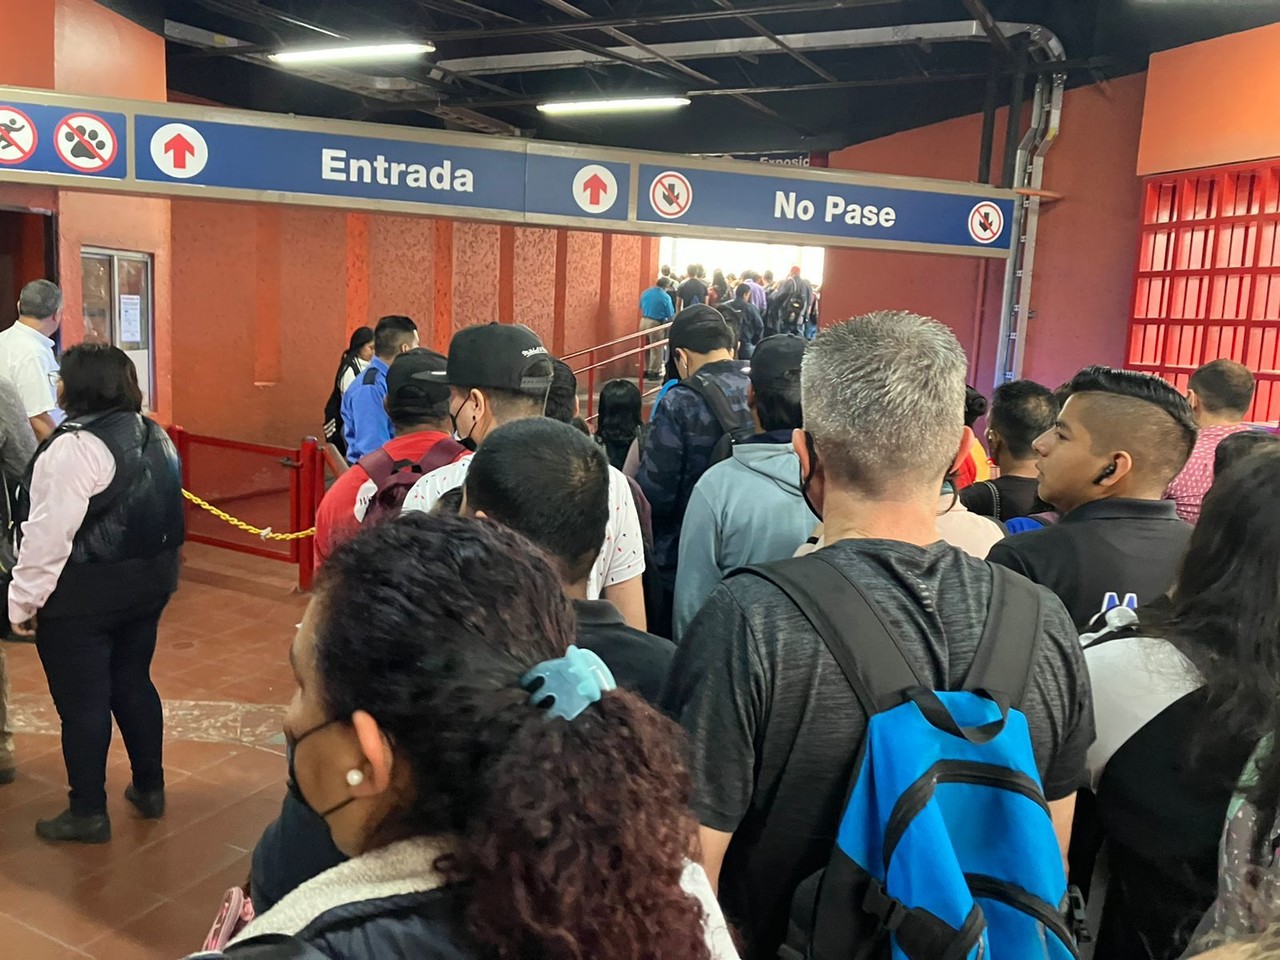 Vuelve caos en el Metro, reportan problemas en la Línea 1